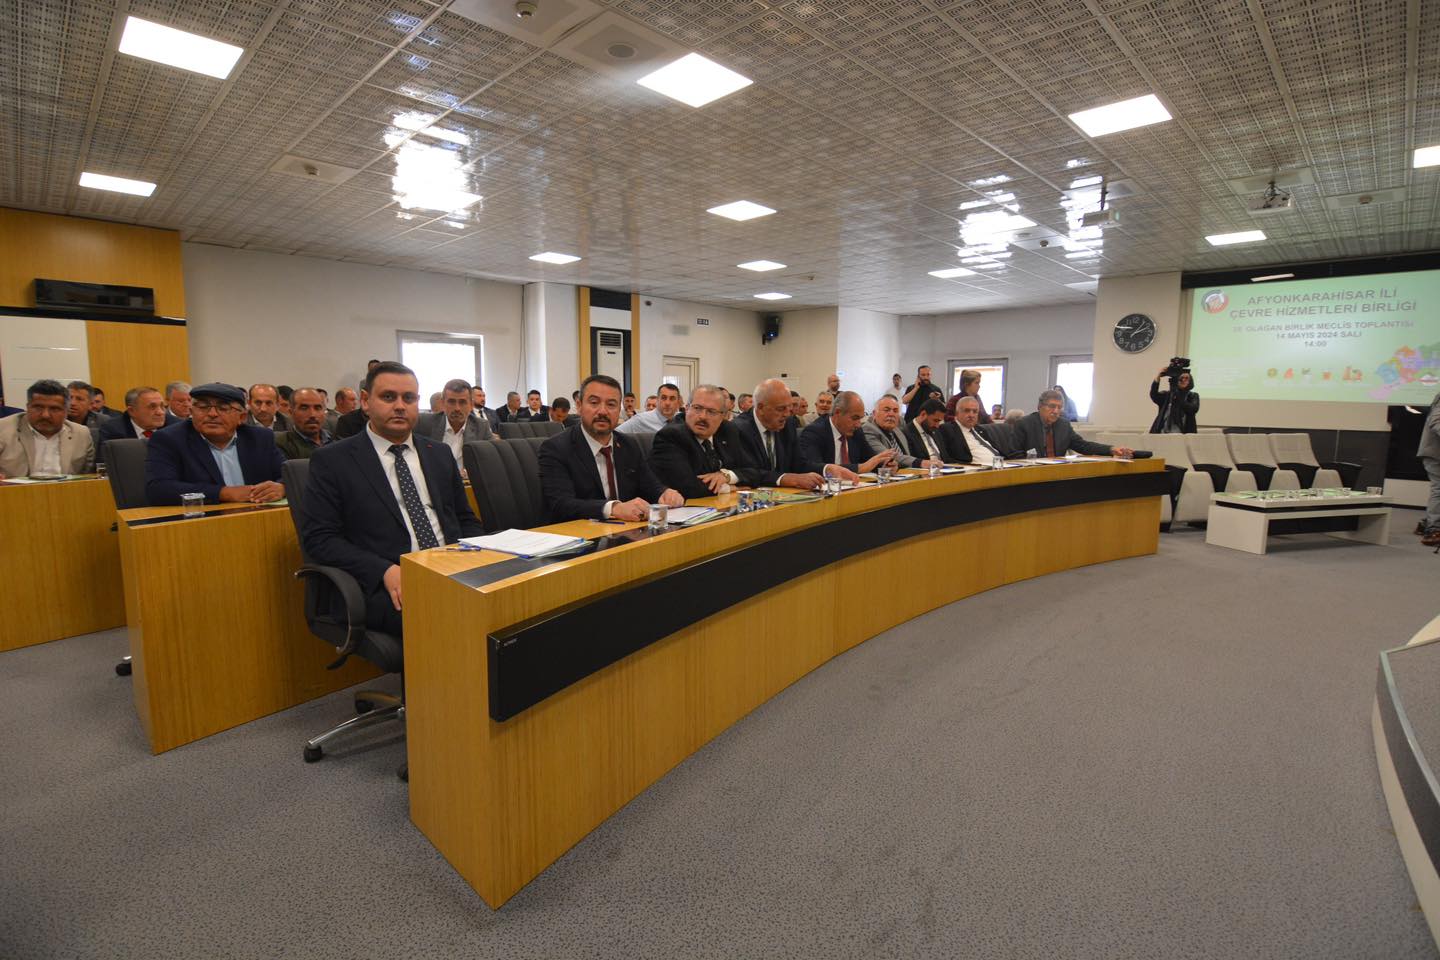 Sandıklı Belediye Başkanı Adnan Öztaş, Çevre Hizmetleri Birliği Başkanlığı'na Seçildi